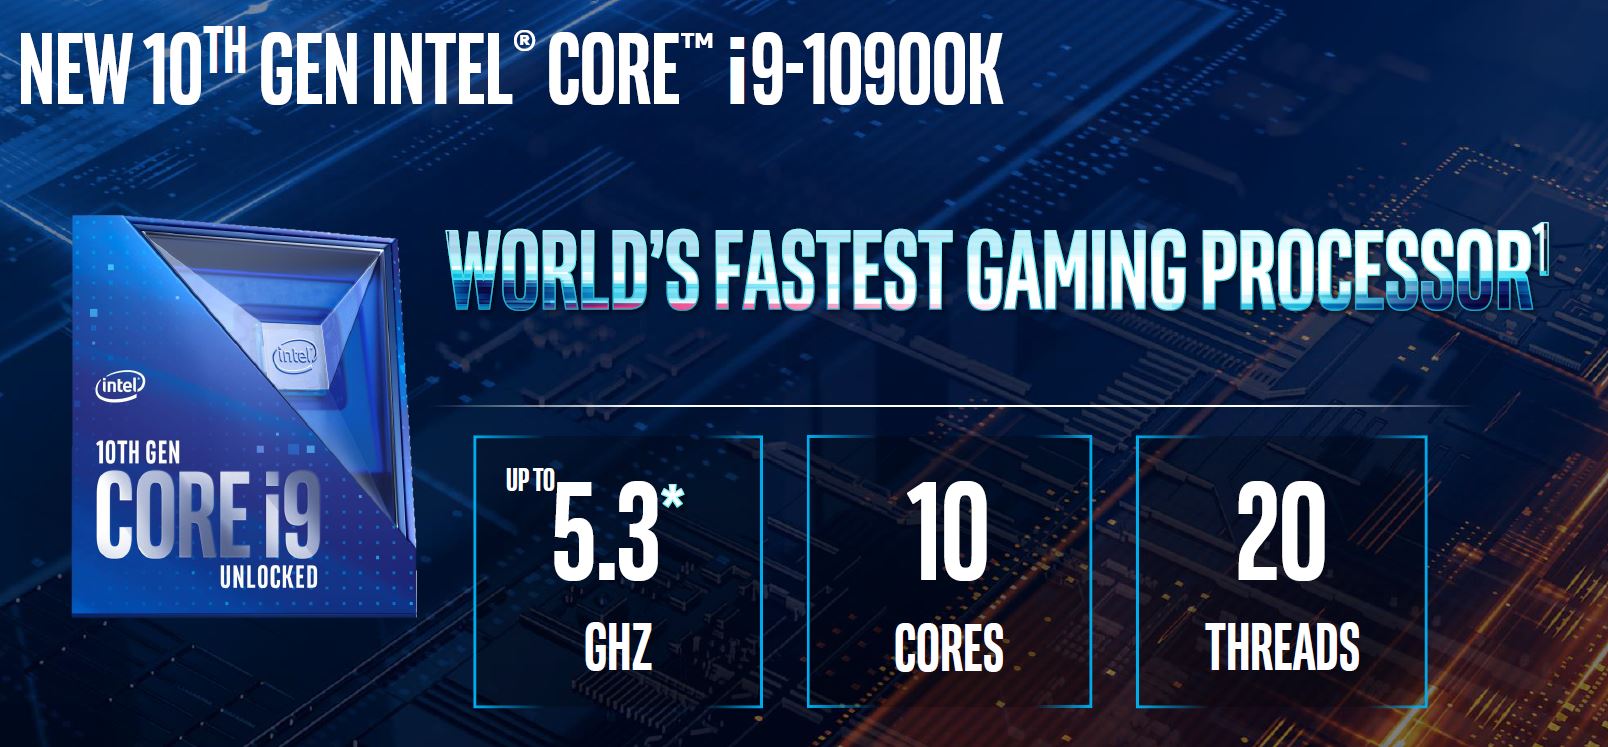 Intel Ra mắt CPU Core I9-10900K 10 nhân 20 luồng Max 5.3Ghz Tuyên bố là CPU mạnh nhất thế giới 